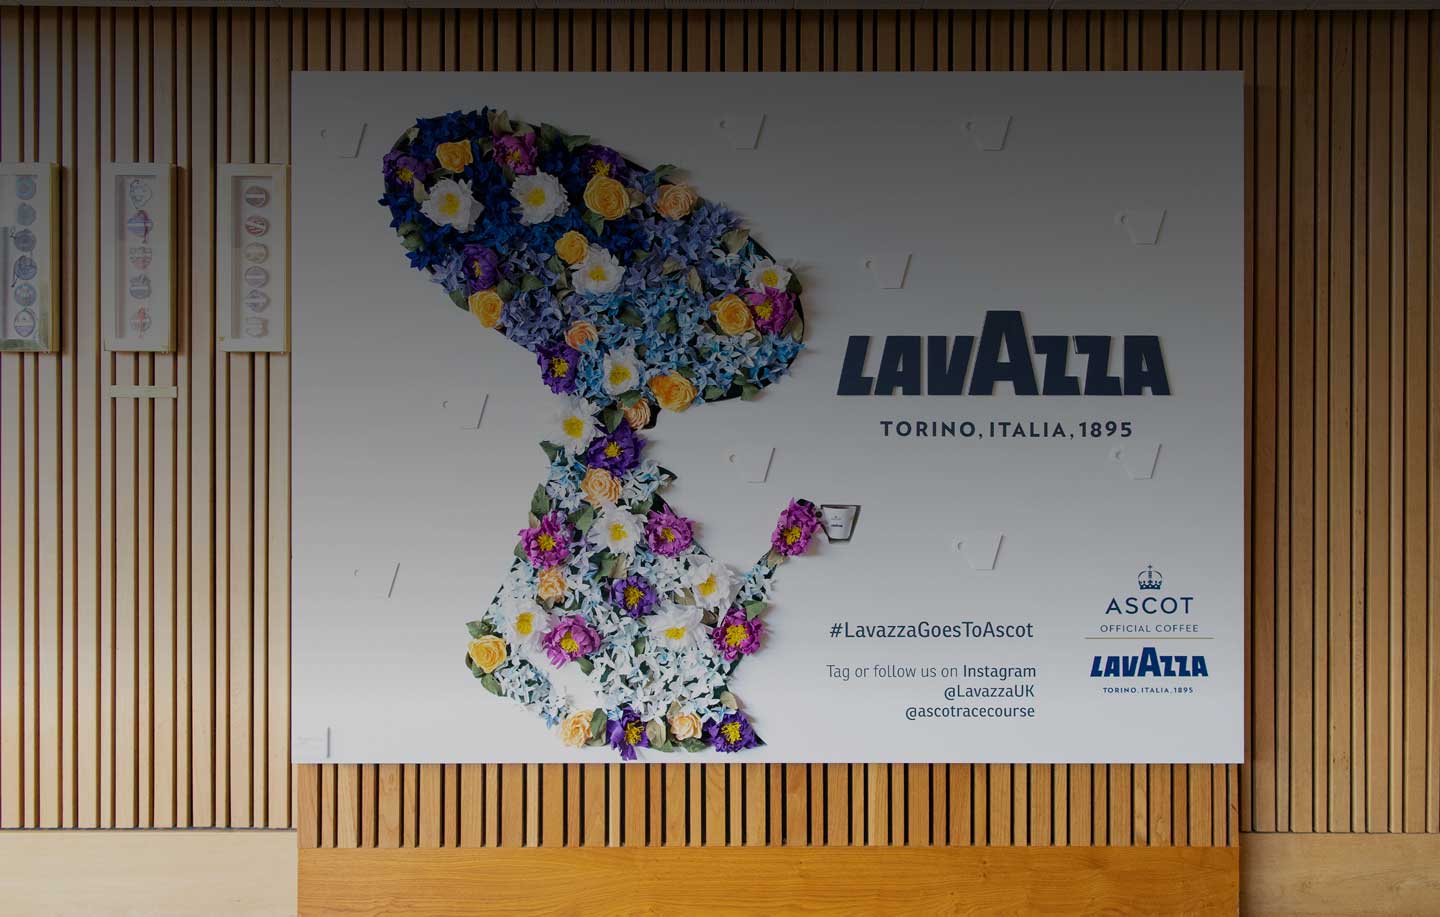 Royal Ascot și Lavazza: împărtășirea acelorași valori